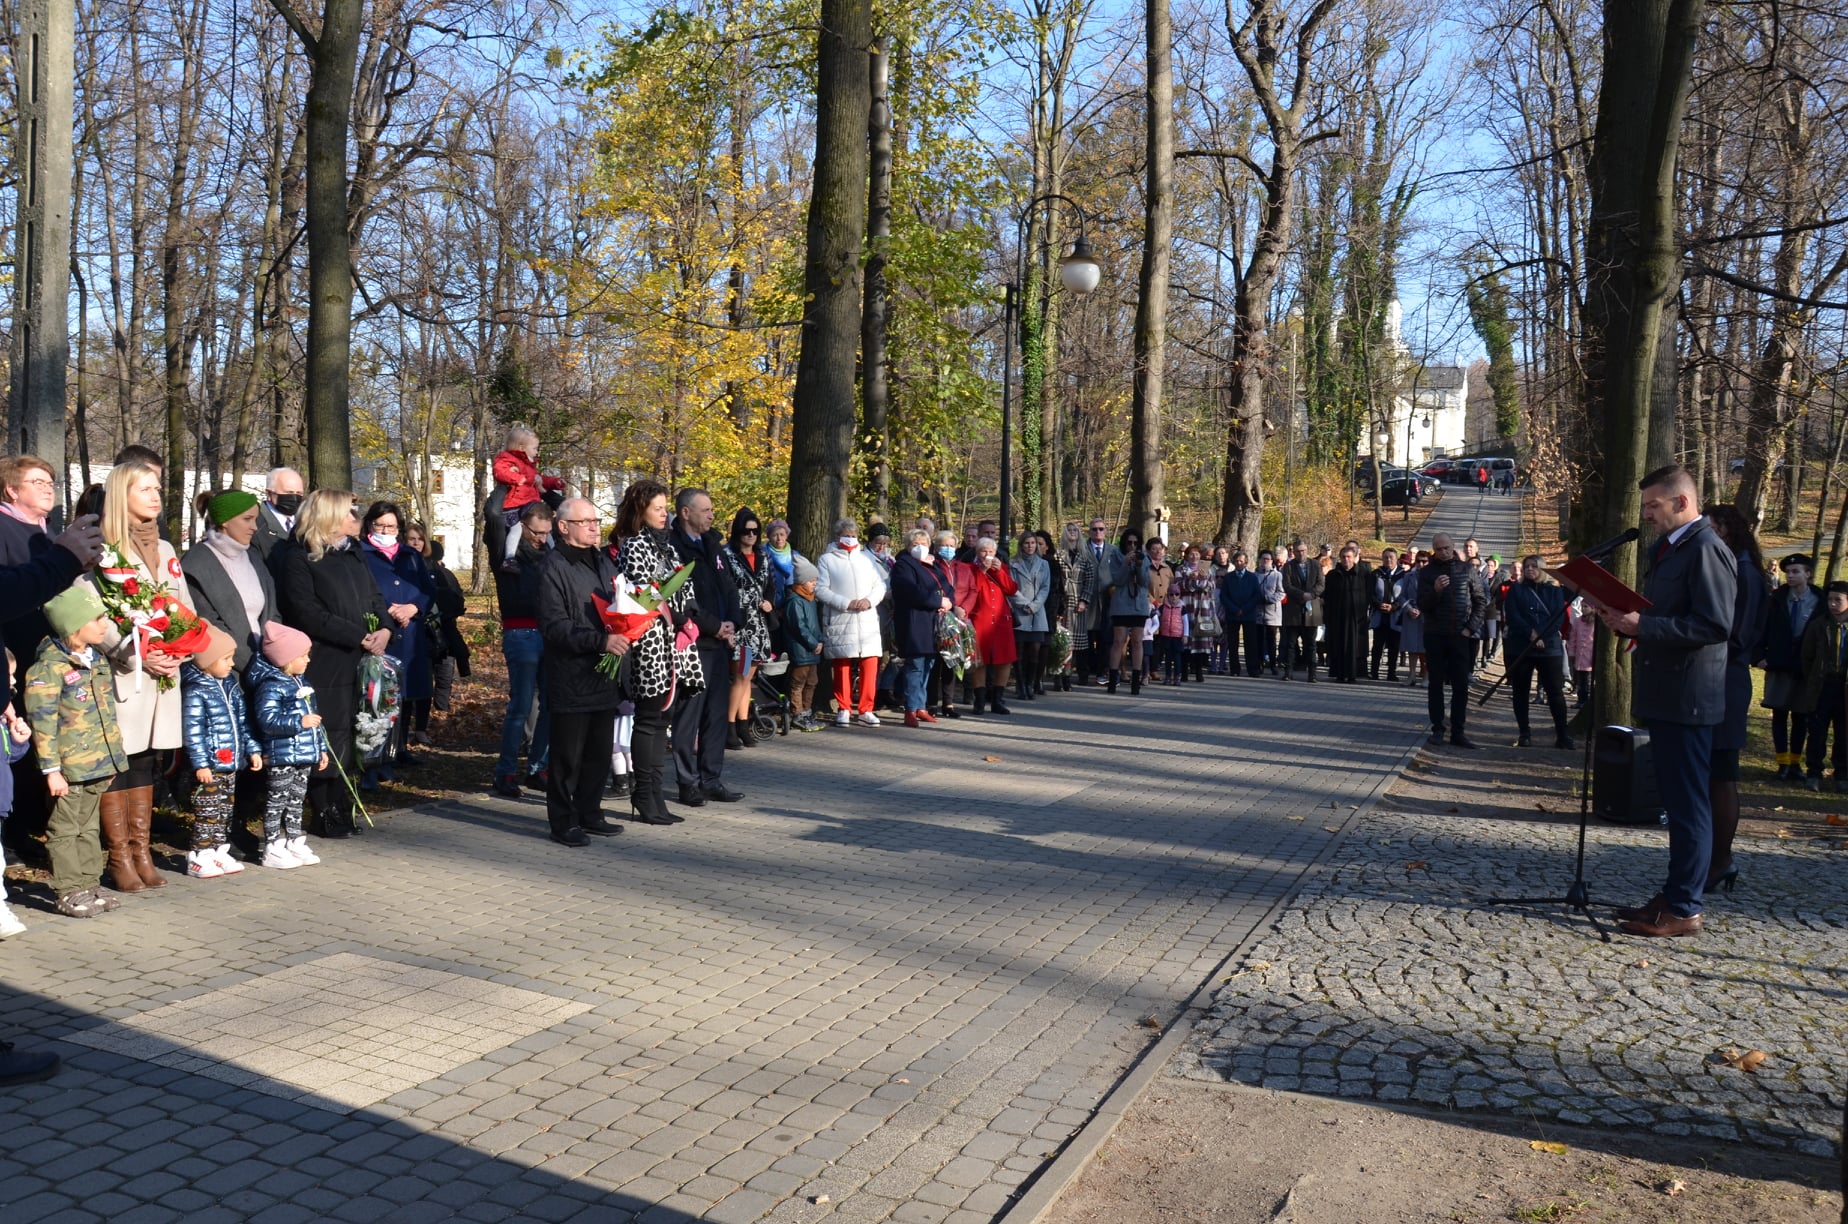 Grupa ludzi stojąca w parku i słuchająca przemówienia. Część z nich trzyma w rękach wiązanki kwiatowe.